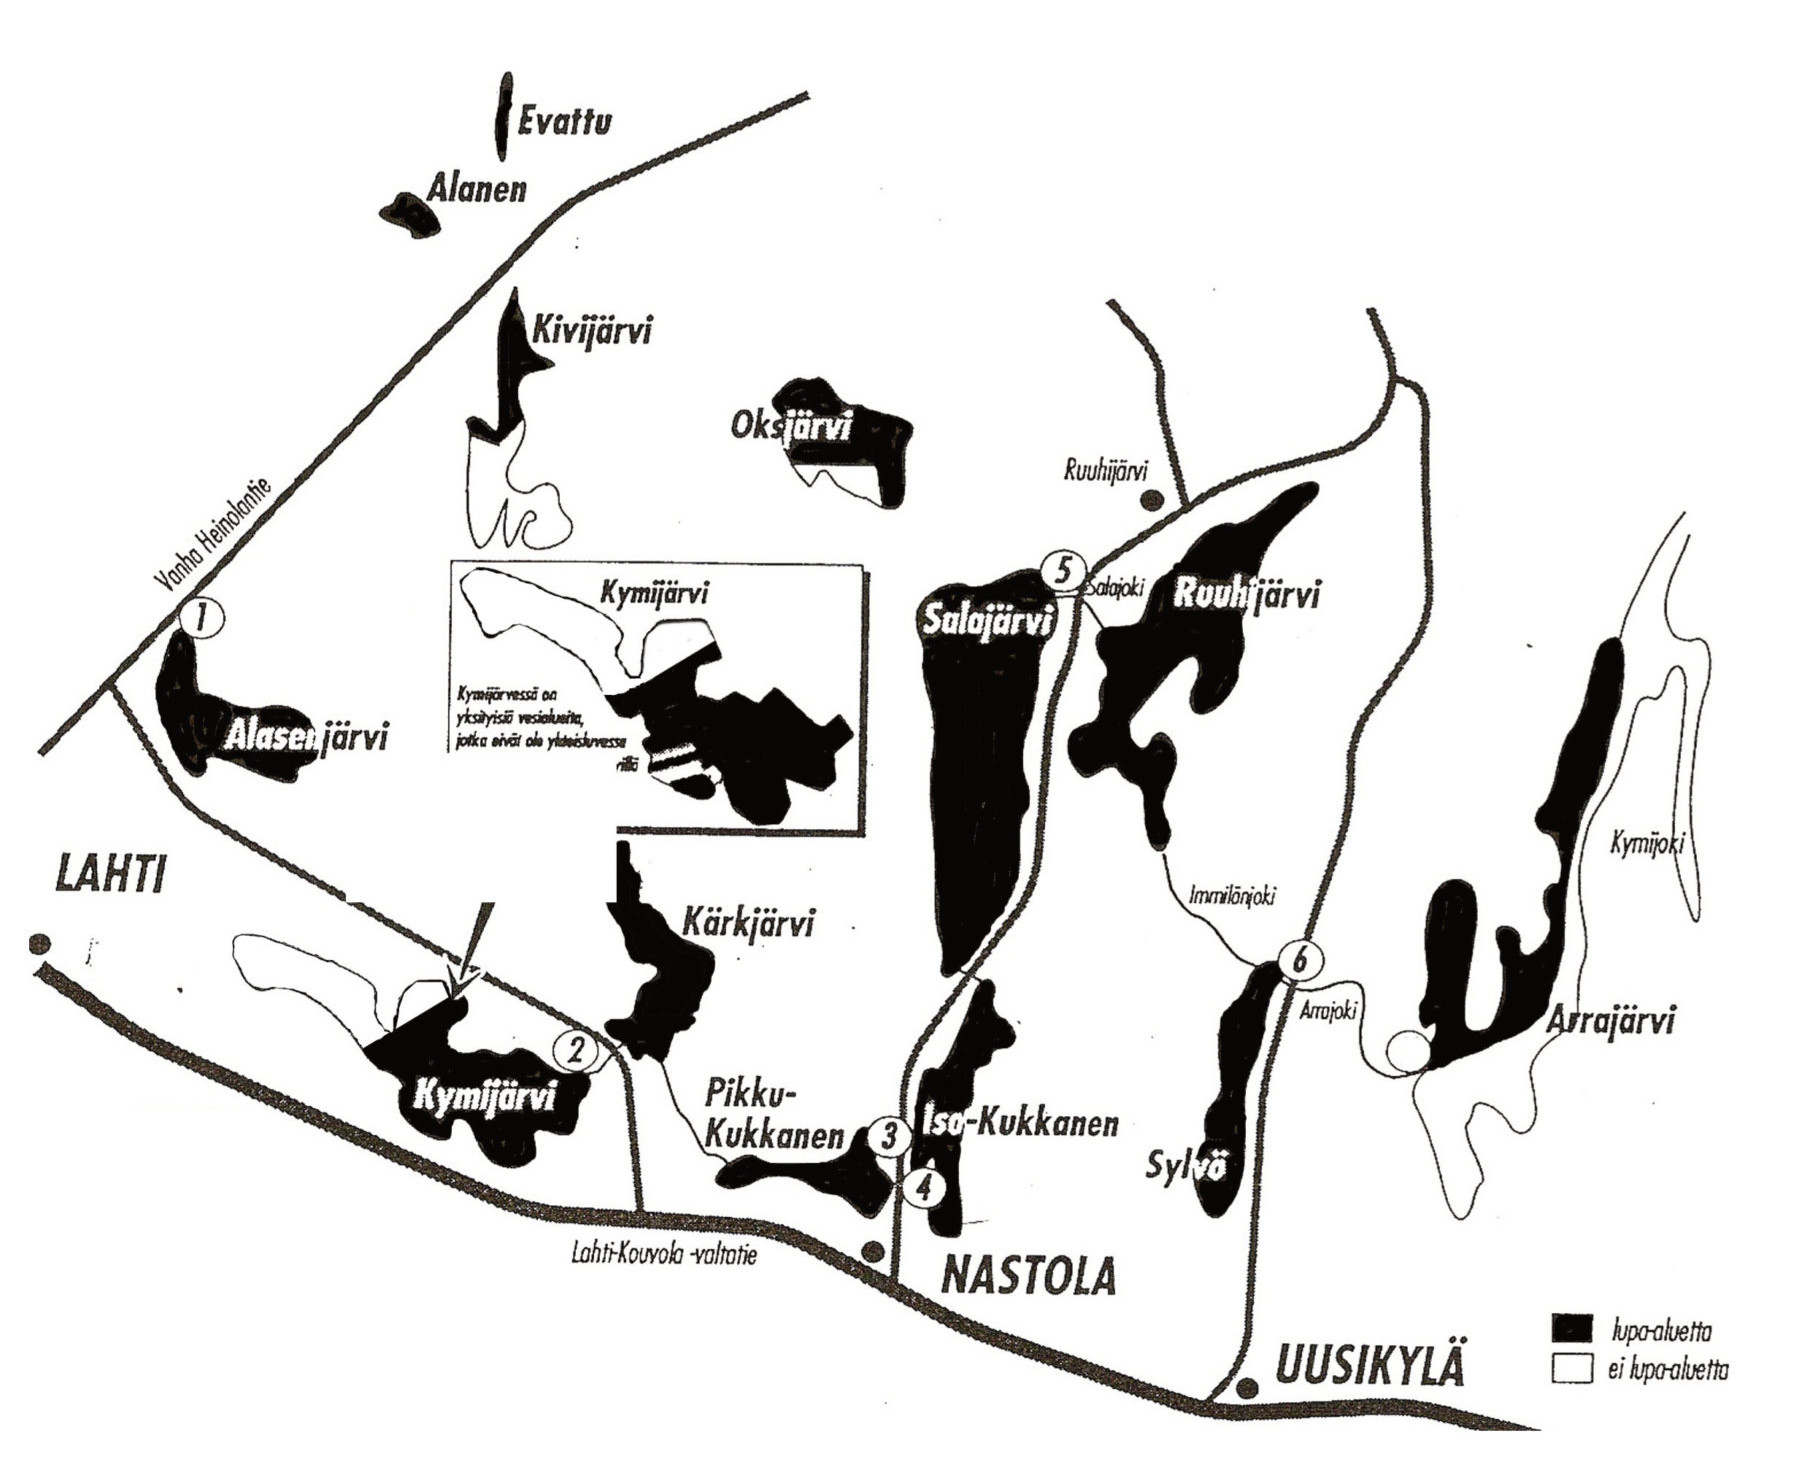 Nastolan yhteislupa-alueen kartta